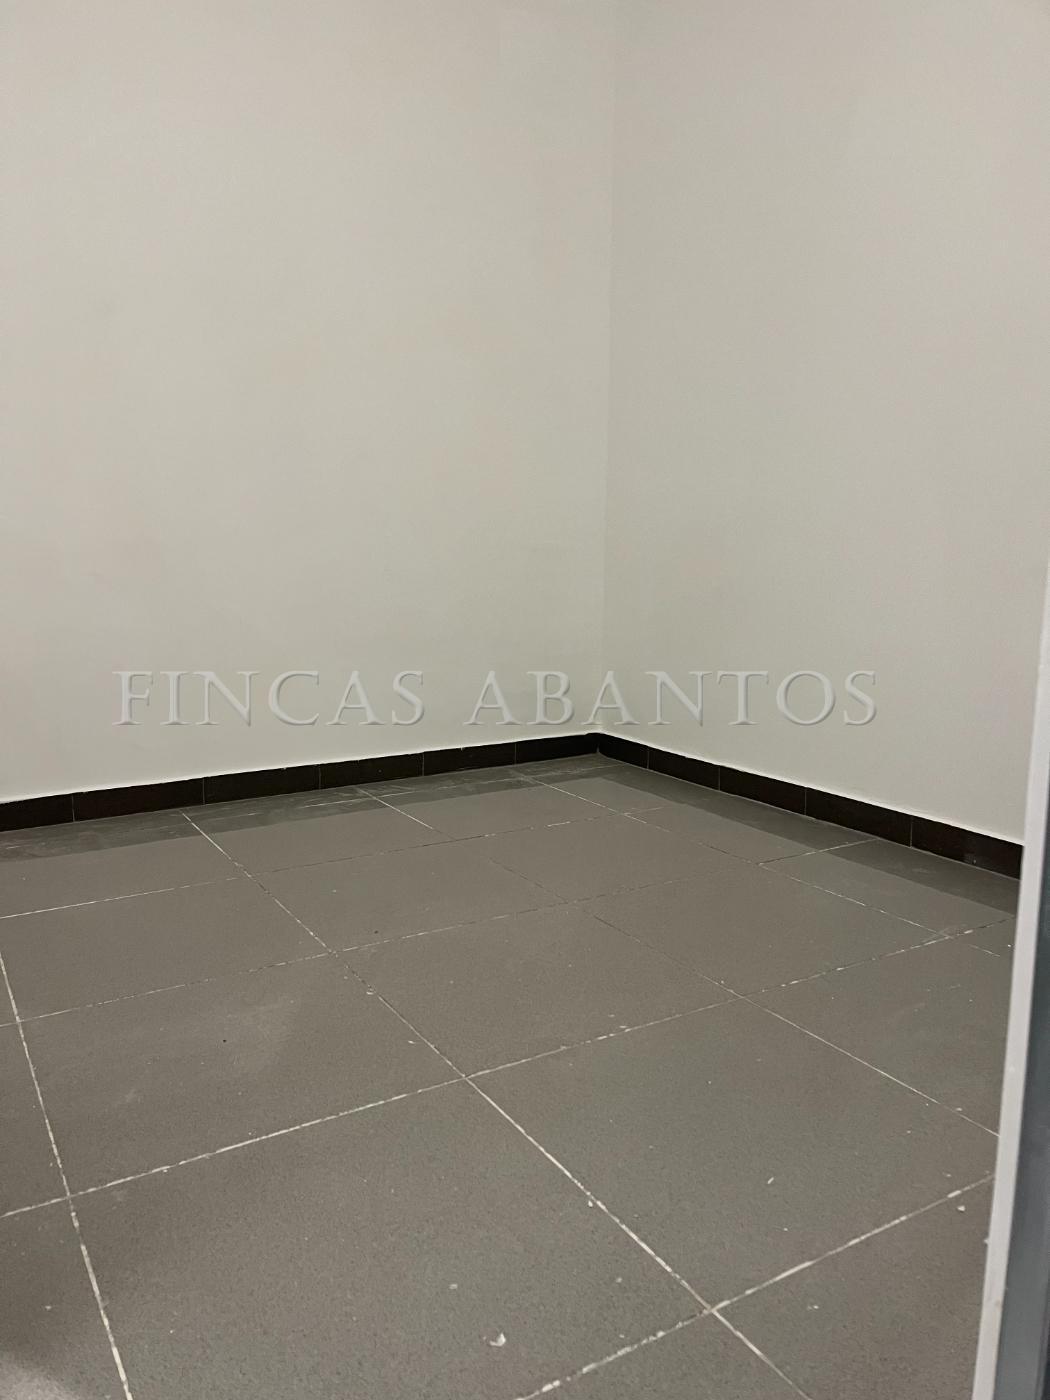 For sale of storage room in San Lorenzo de El Escorial